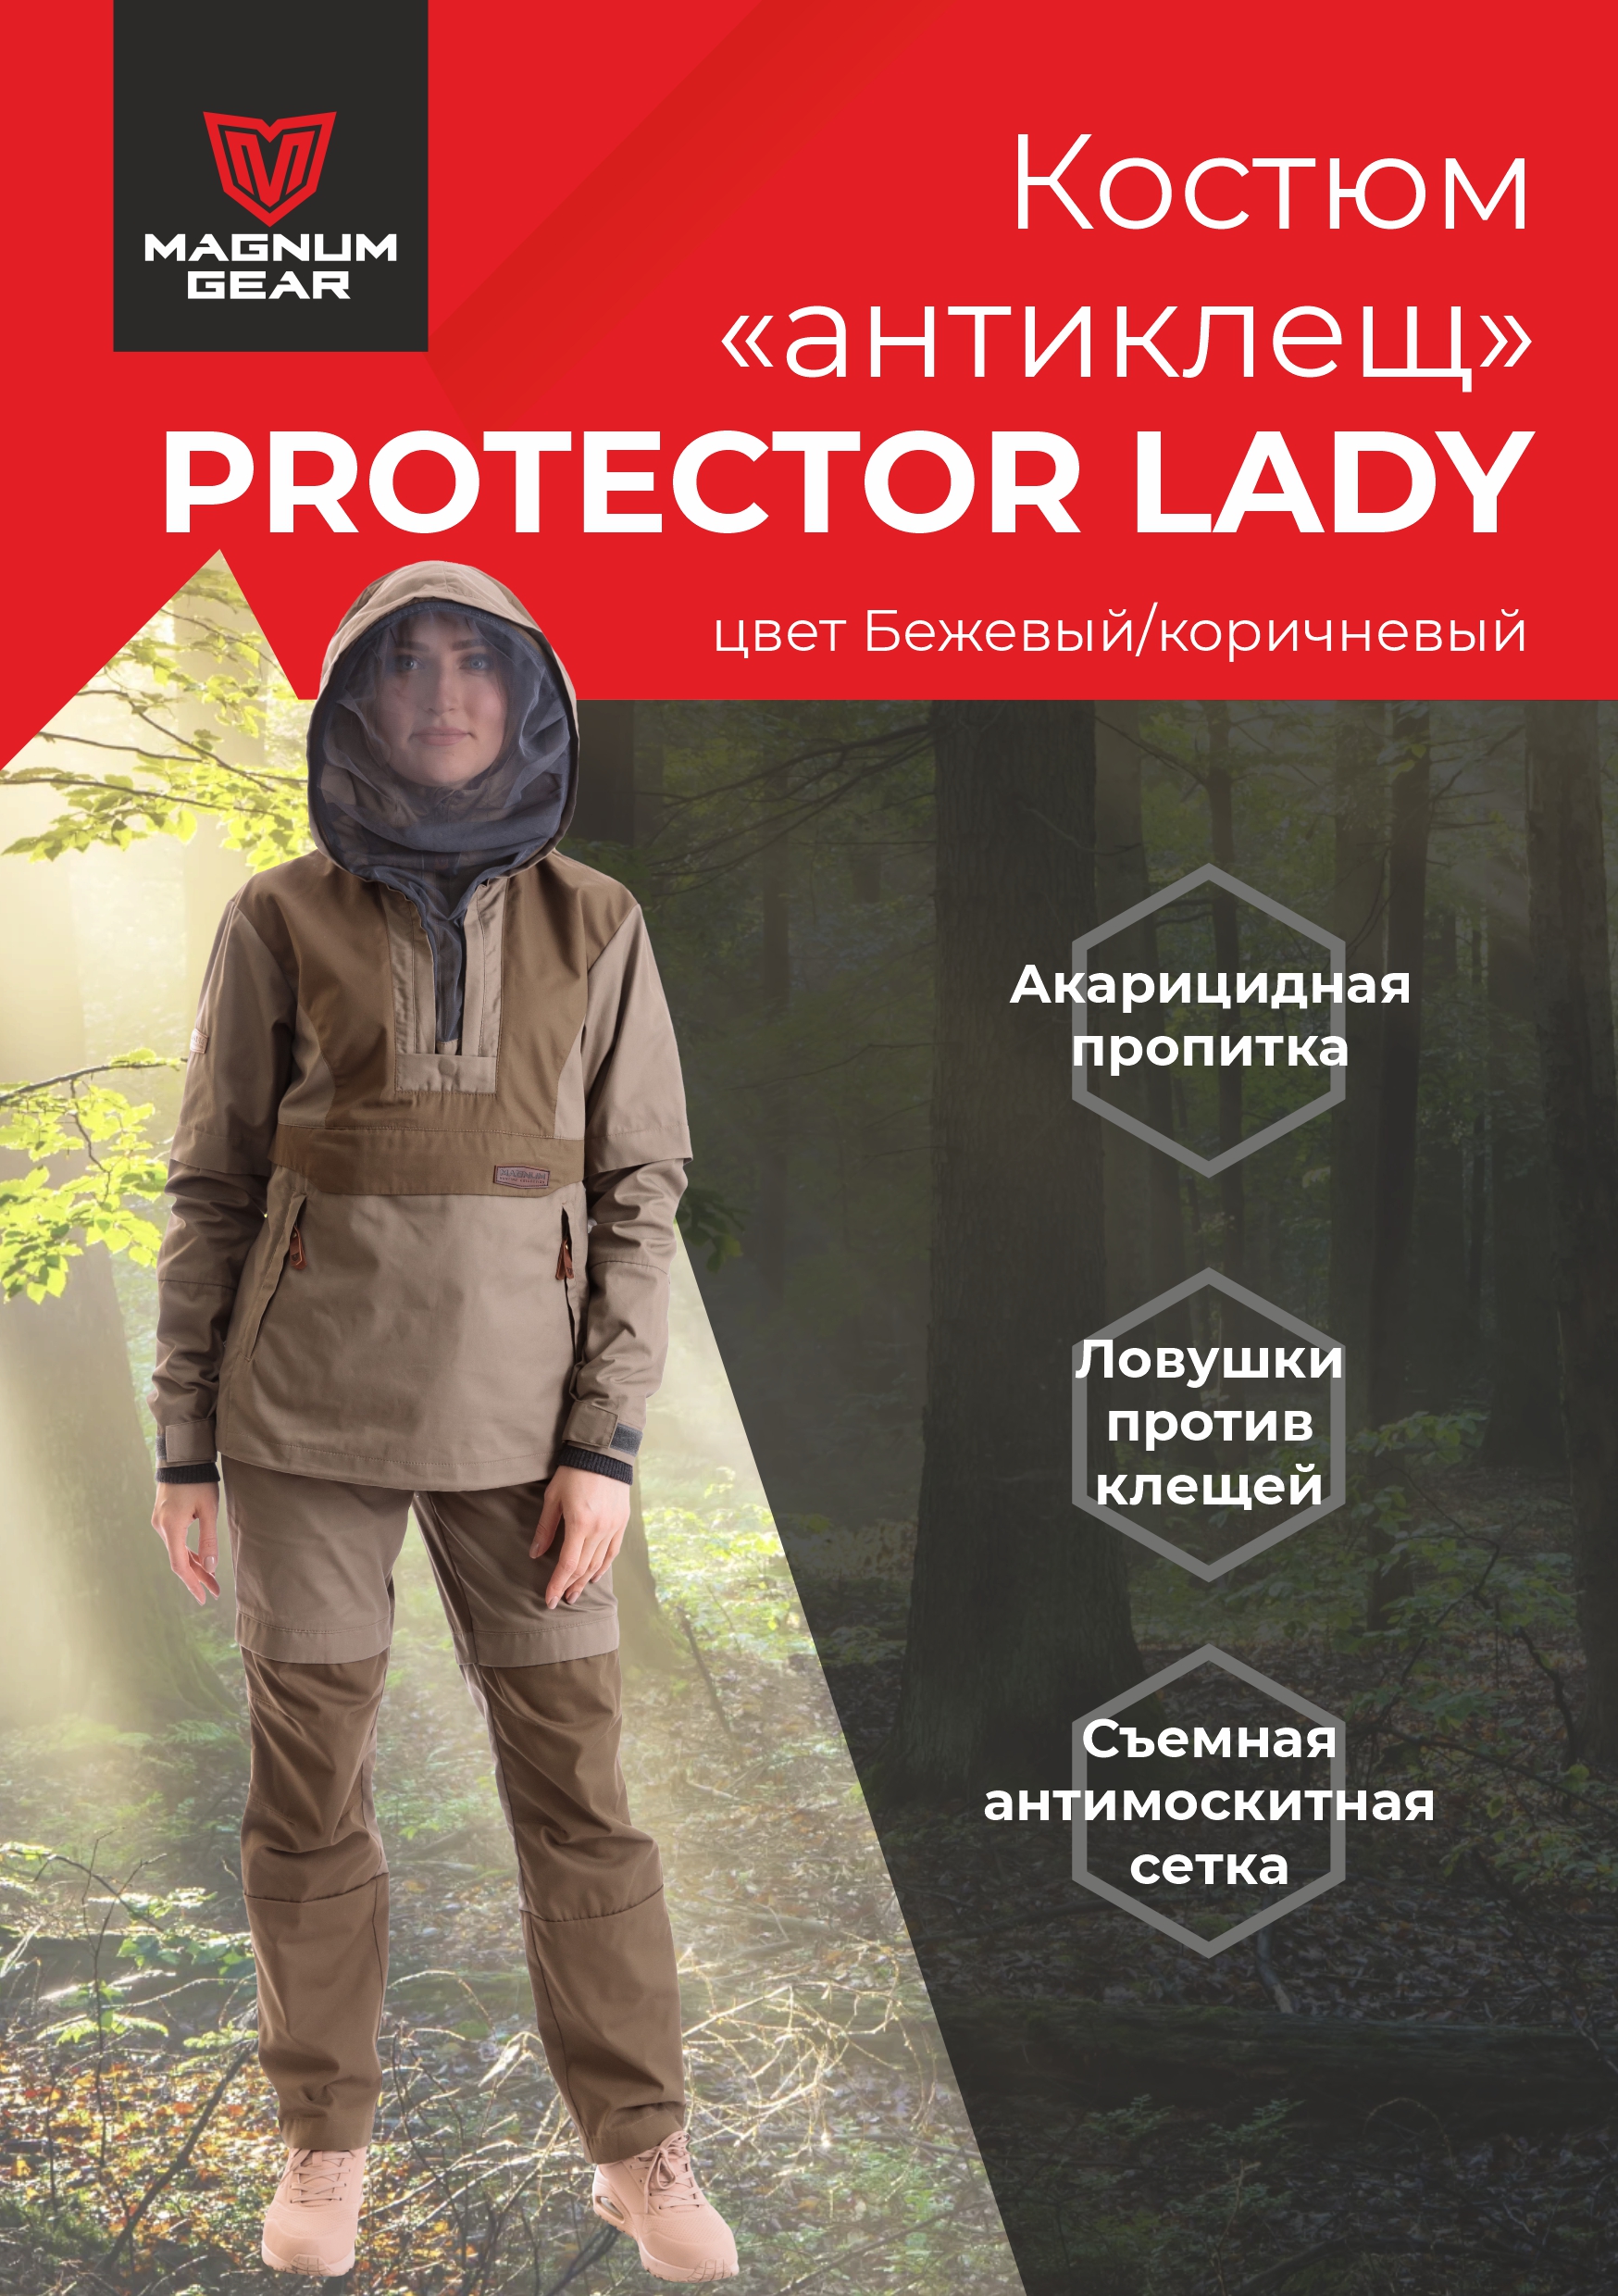 Костюм женский Magnum Gear, PROTECTOR LADY, бежевый/коричневый, размер XXL, рост 170-176